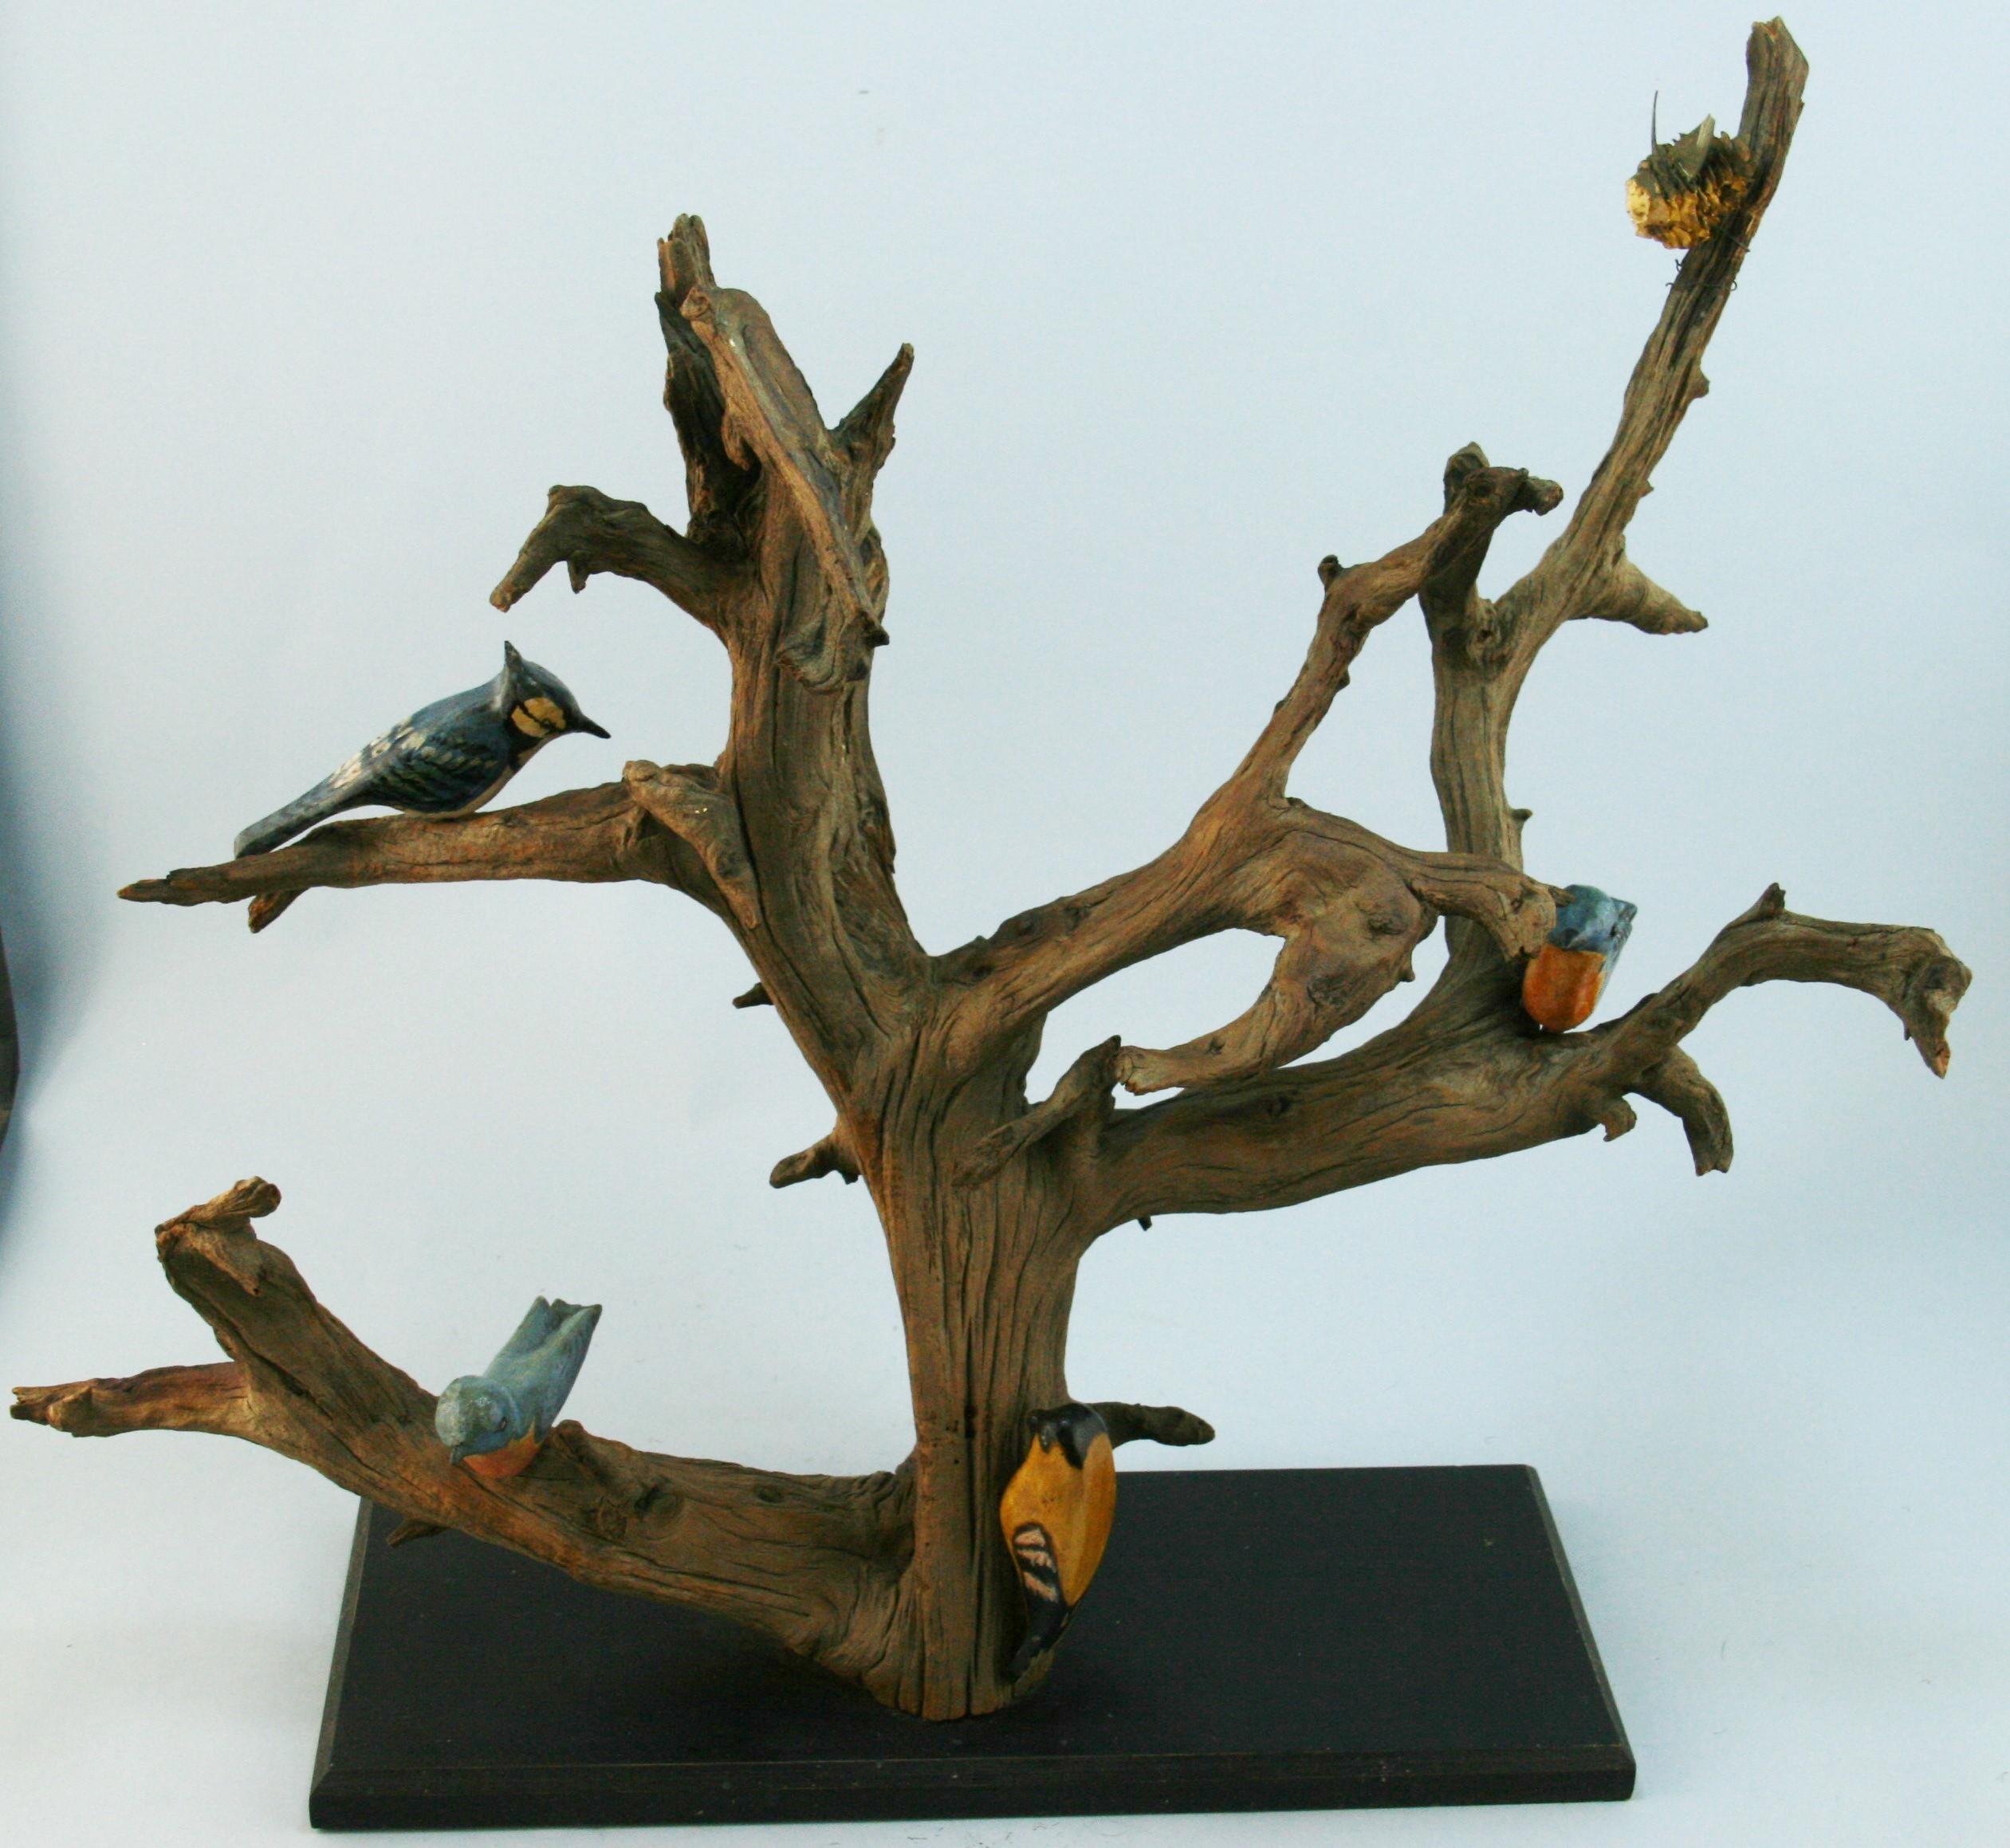 Arbre à oiseaux japonais d'art populaire fantaisiste du début du XXe siècle.  bois flotté sculpté et peint à la main  sculpture d'oiseaux.